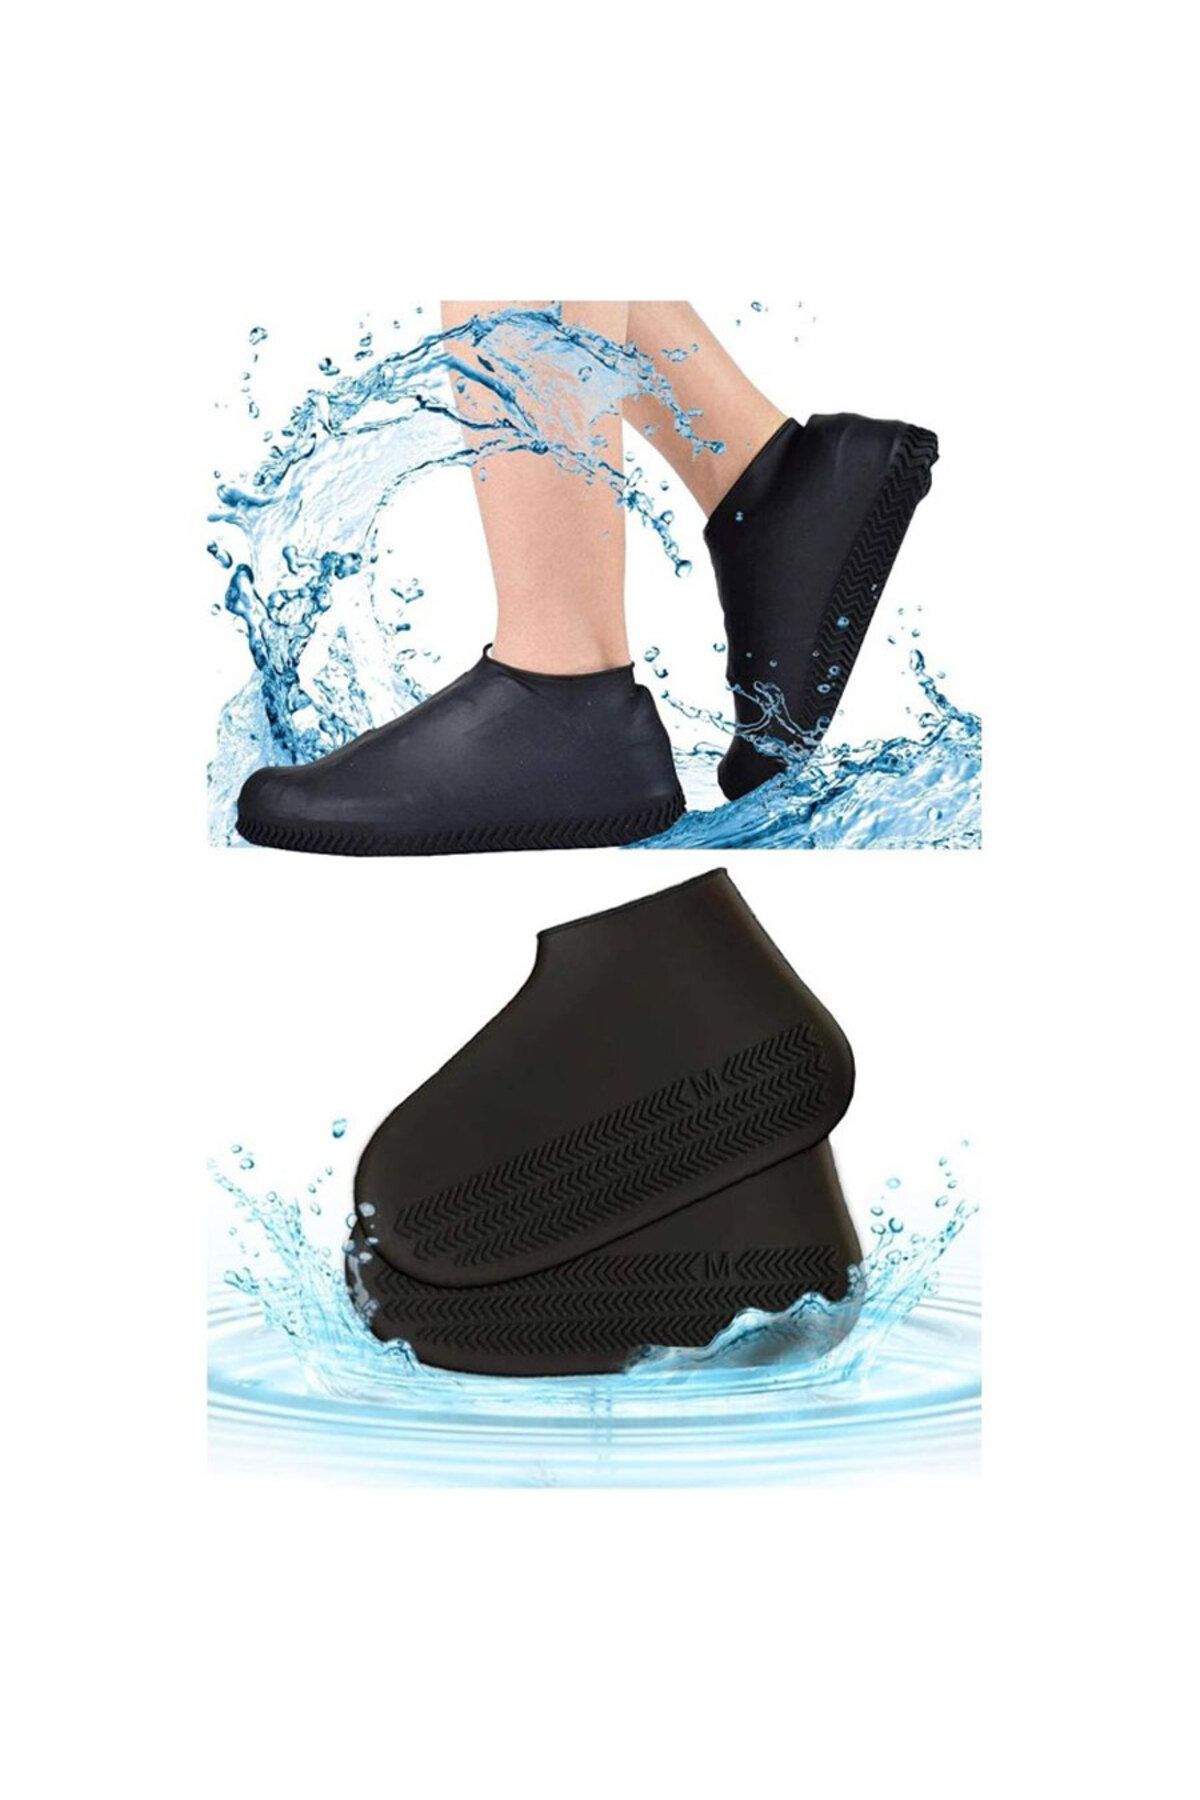 Skygo Siyah Silikon Yağmur Koruyucu Ayakkabı Kılıfı Kaymaz Su Kir Geçirmez Large (40-46)